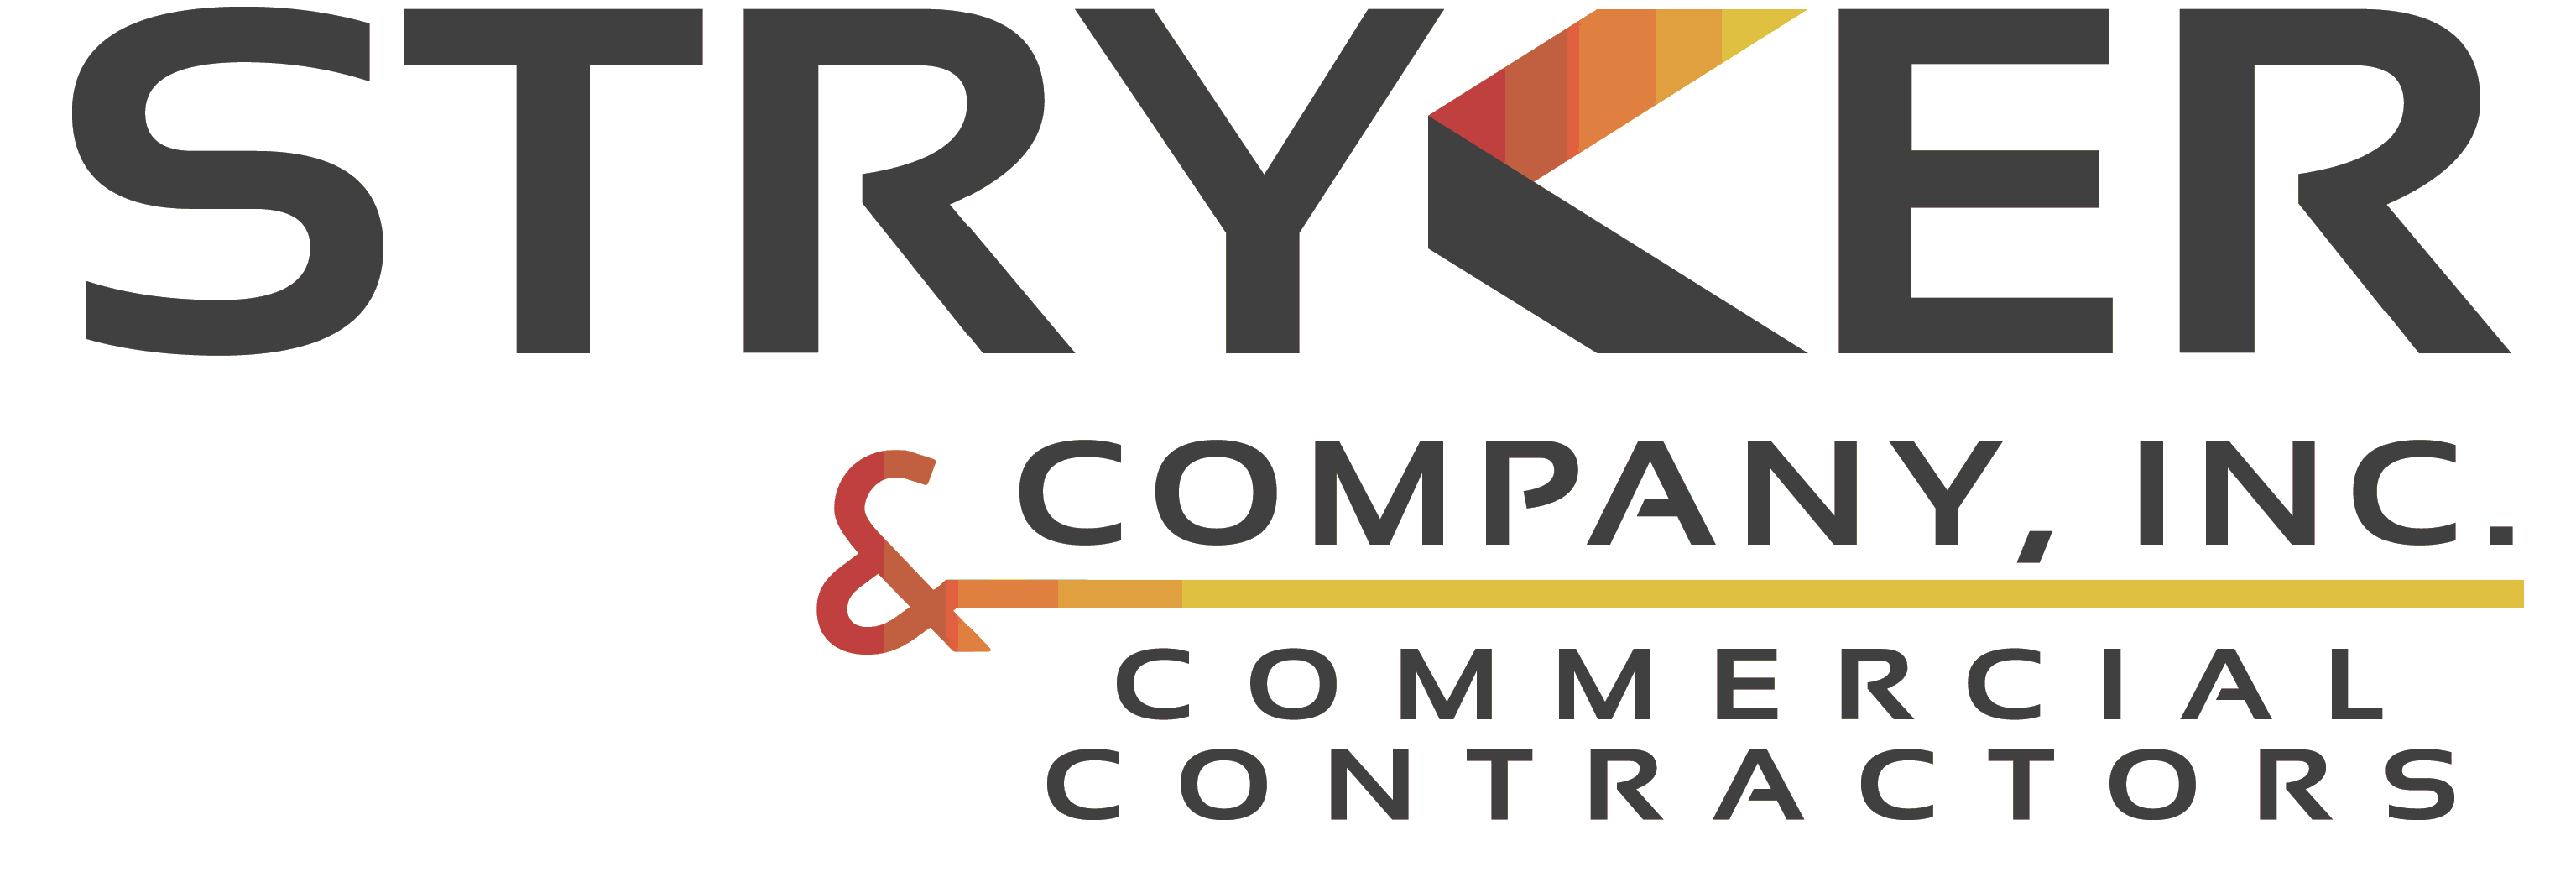 Image: Stryker & Company,Inc. Logo